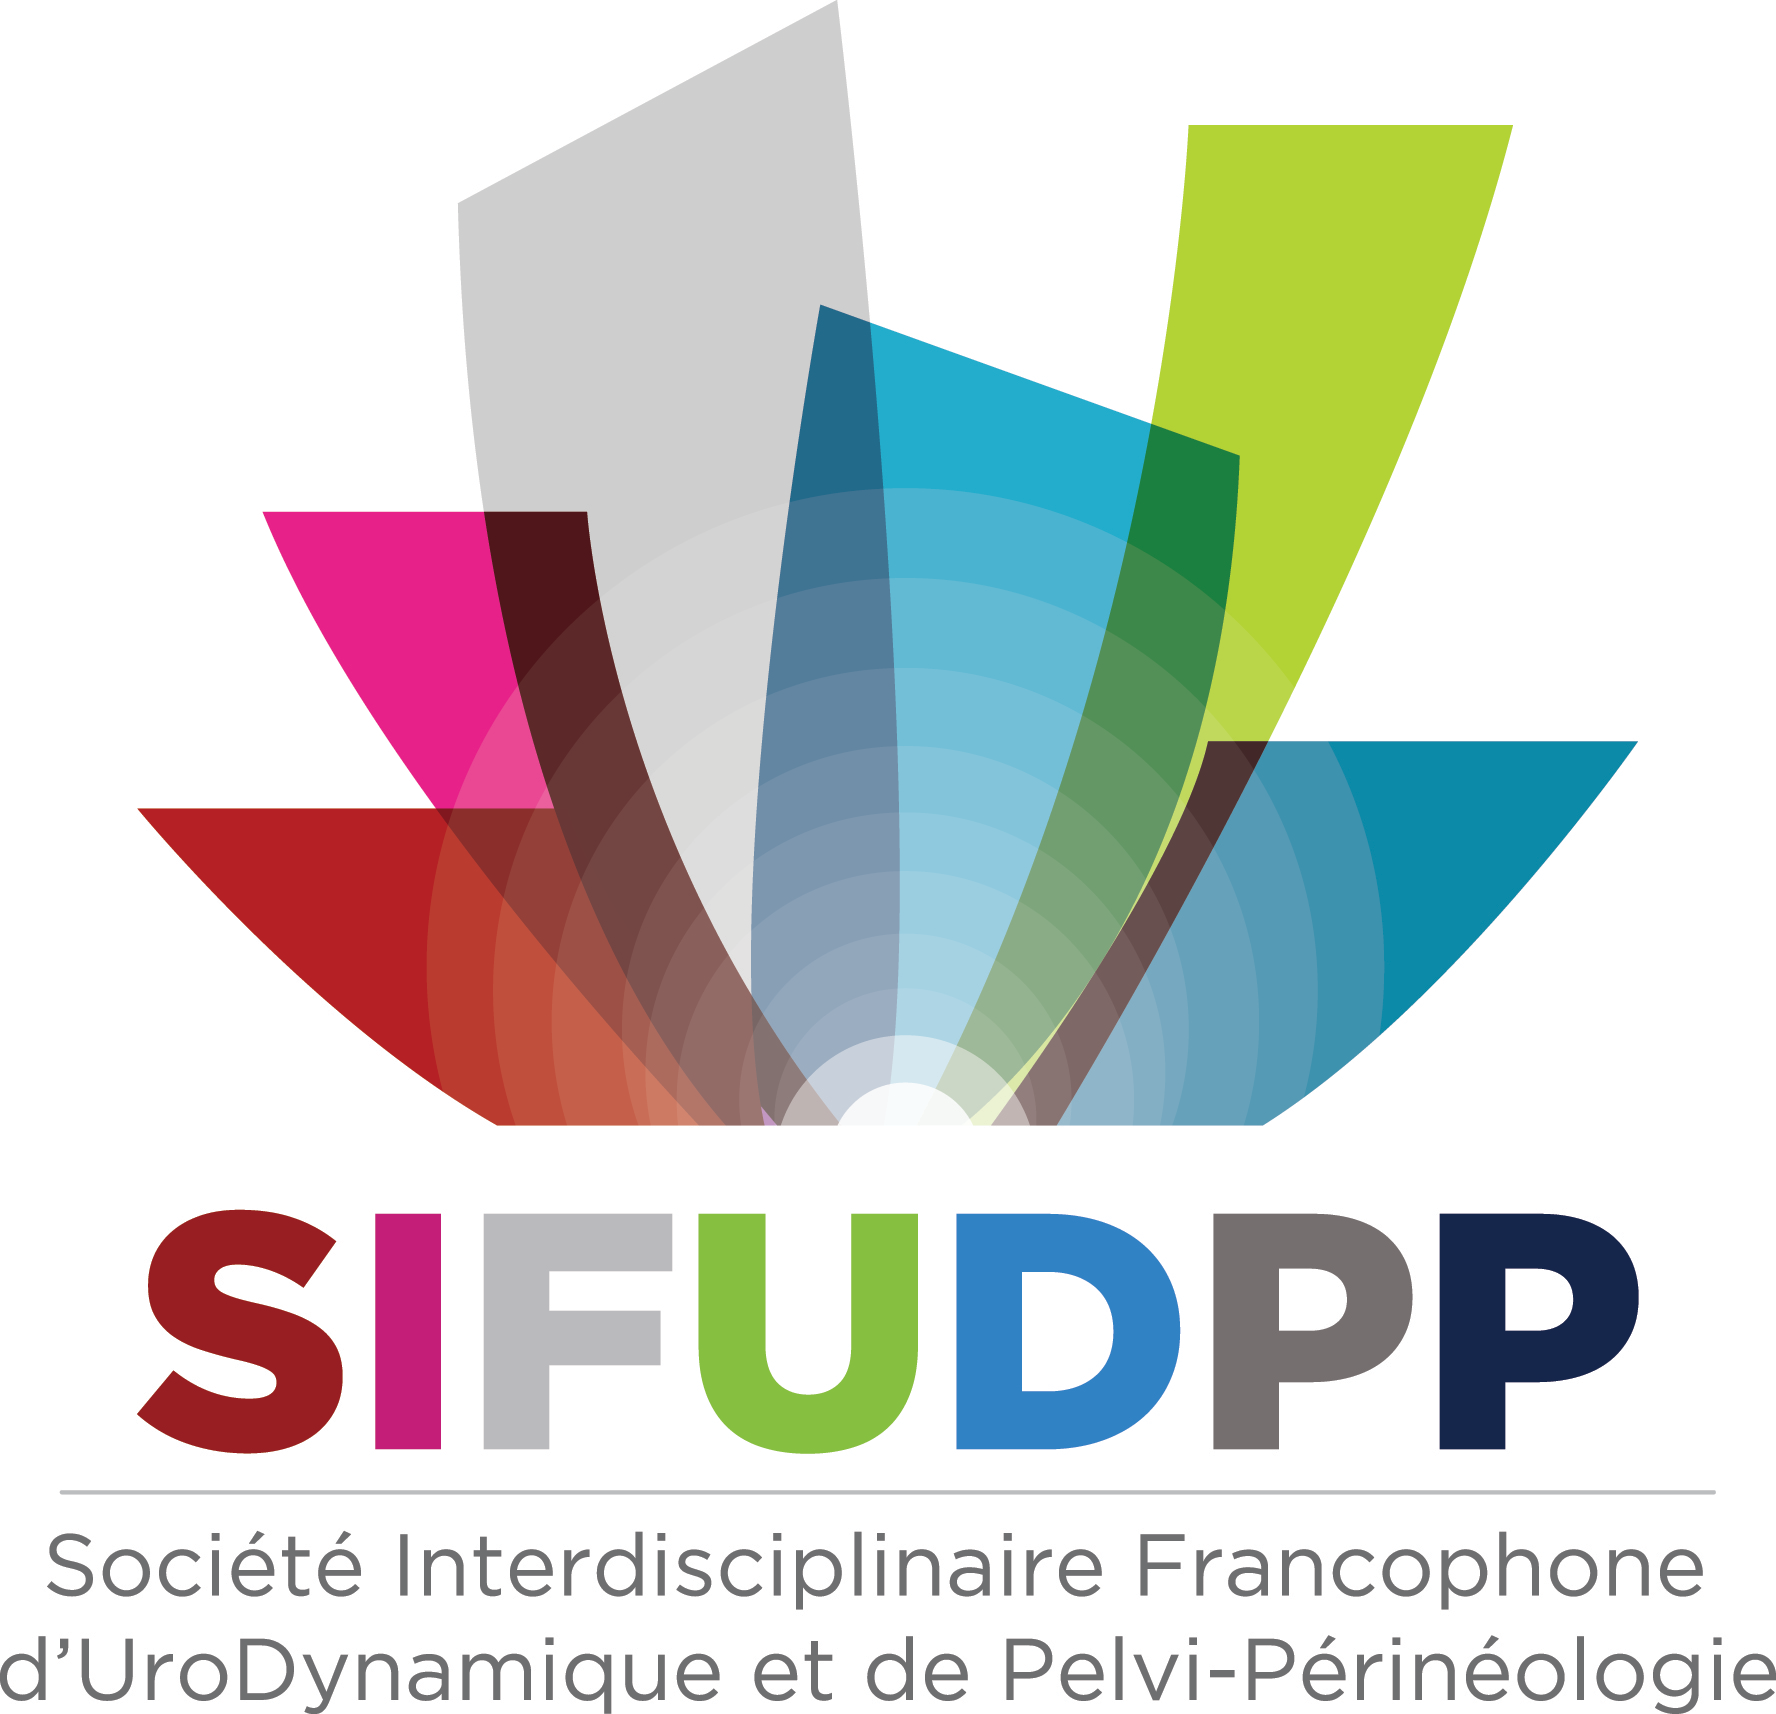 SIFUD-PP Paris 2016 : Le patient à risque médico-légal : discussion et clôture de la journée